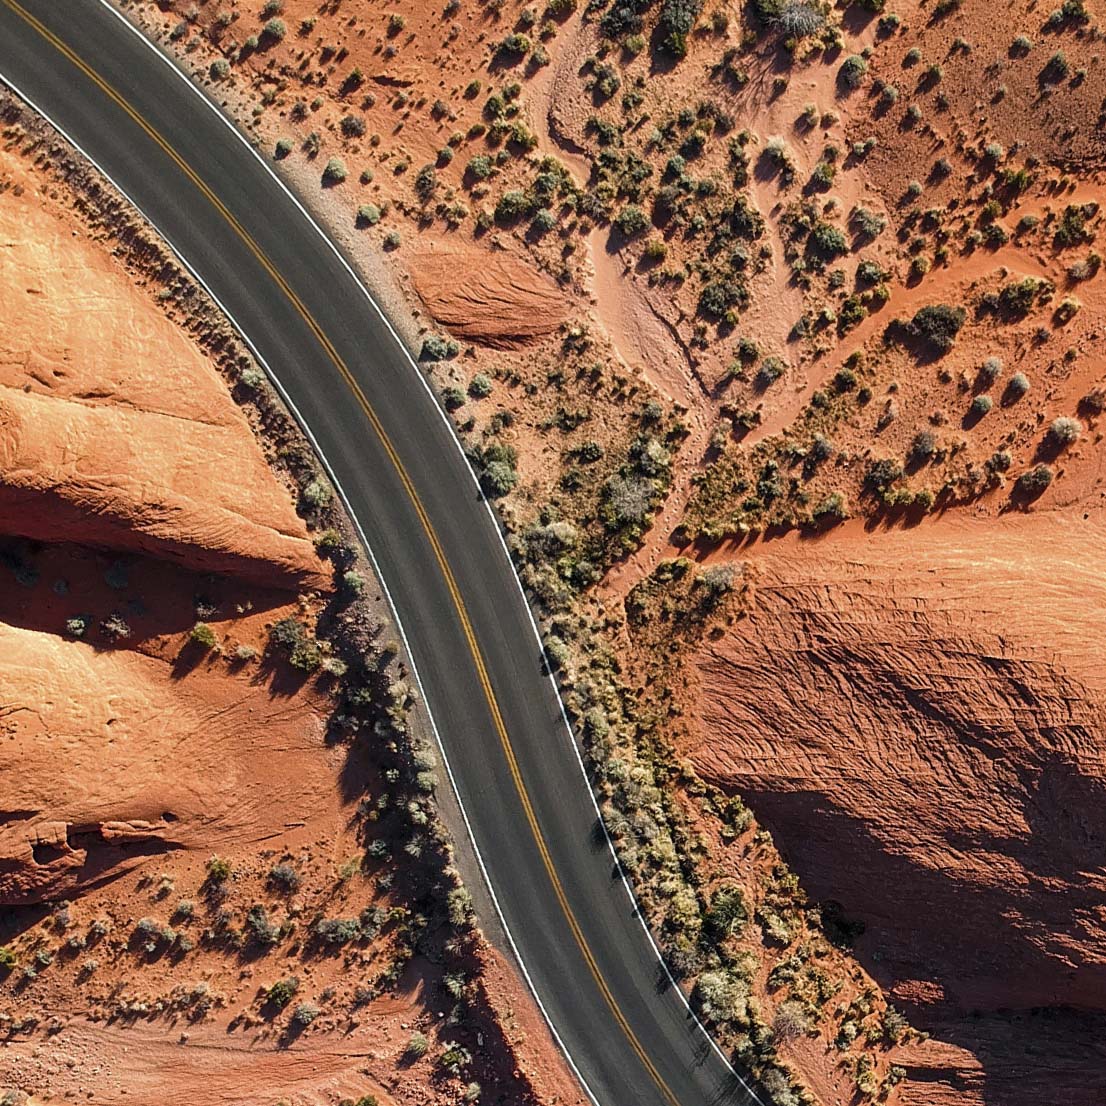 A road over a desert landscape where CUPRA Ateca Film was shot.